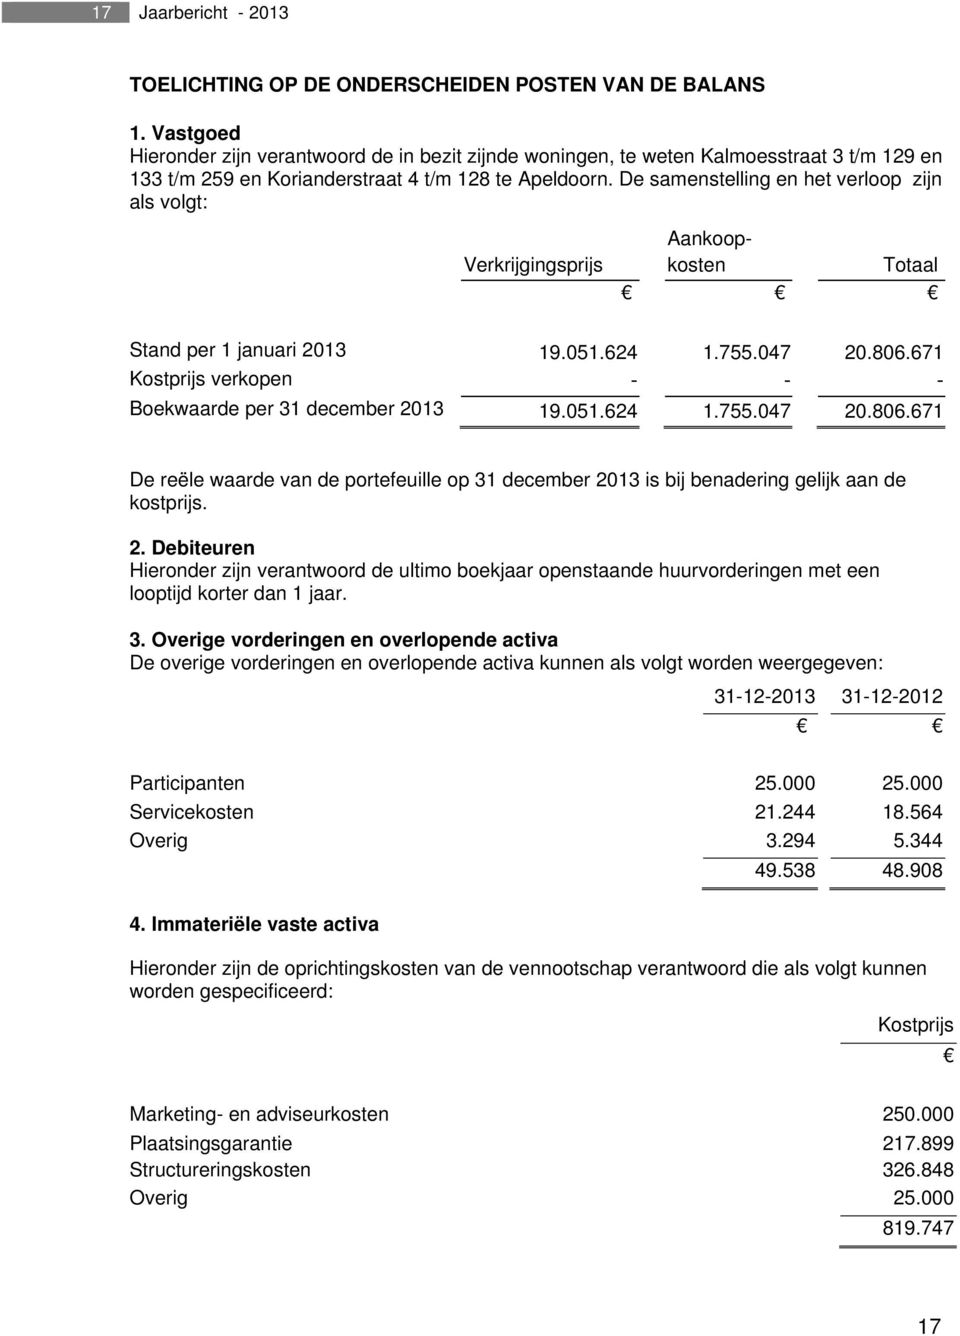 De samenstelling en het verloop zijn als volgt: Verkrijgingsprijs Aankoopkosten Totaal Stand per 1 januari 2013 19.051.624 1.755.047 20.806.